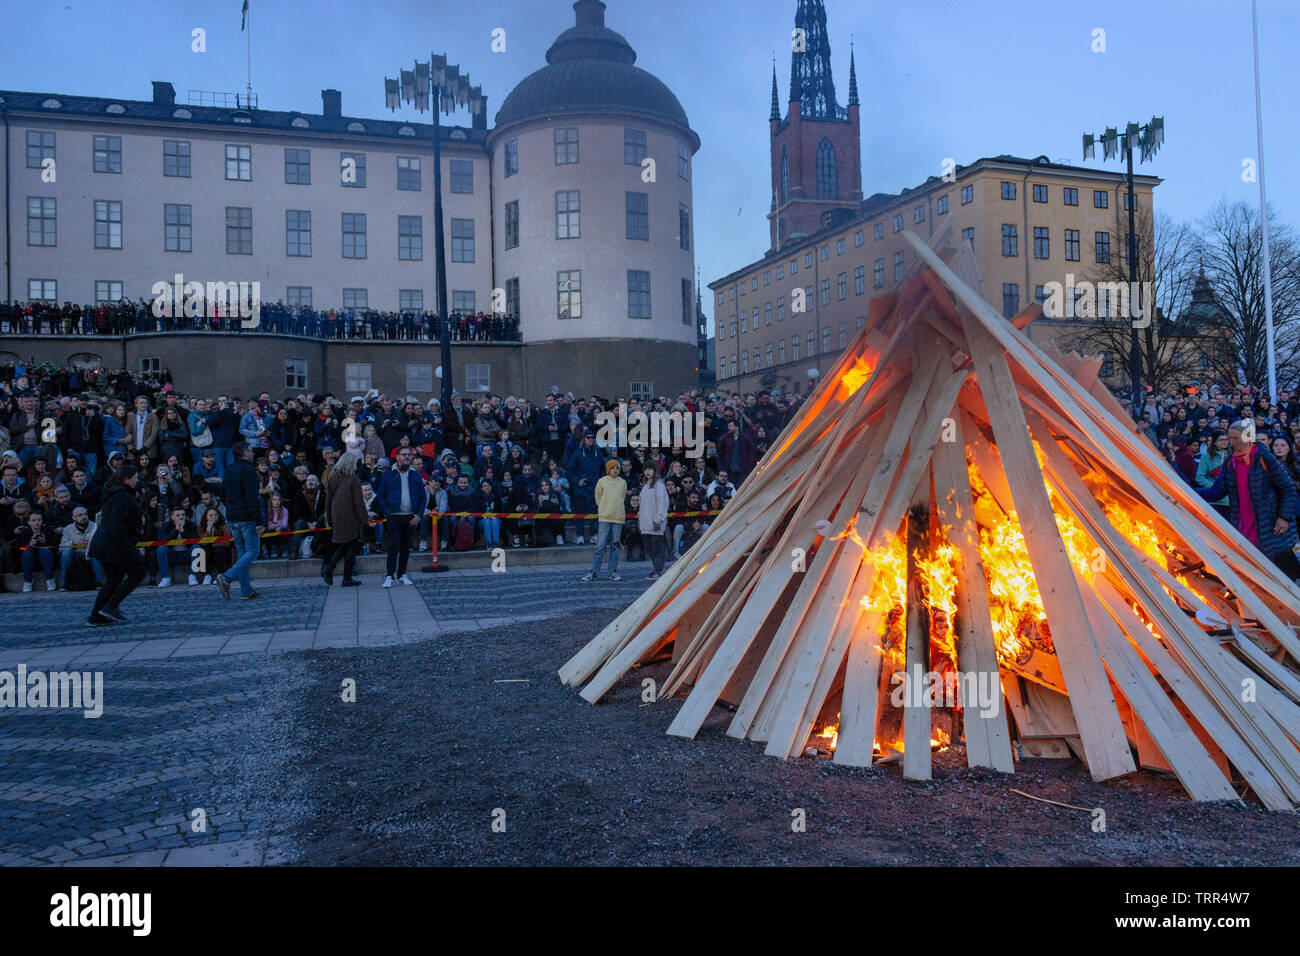 Montón de madera ardiendo y multitudes delante del palacio Wrangel celebrando Mayday vísperas vieja costumbre (St. Walpurgis). Riddarholmen, Gamla Stan, Estocolmo, Suecia Foto de stock